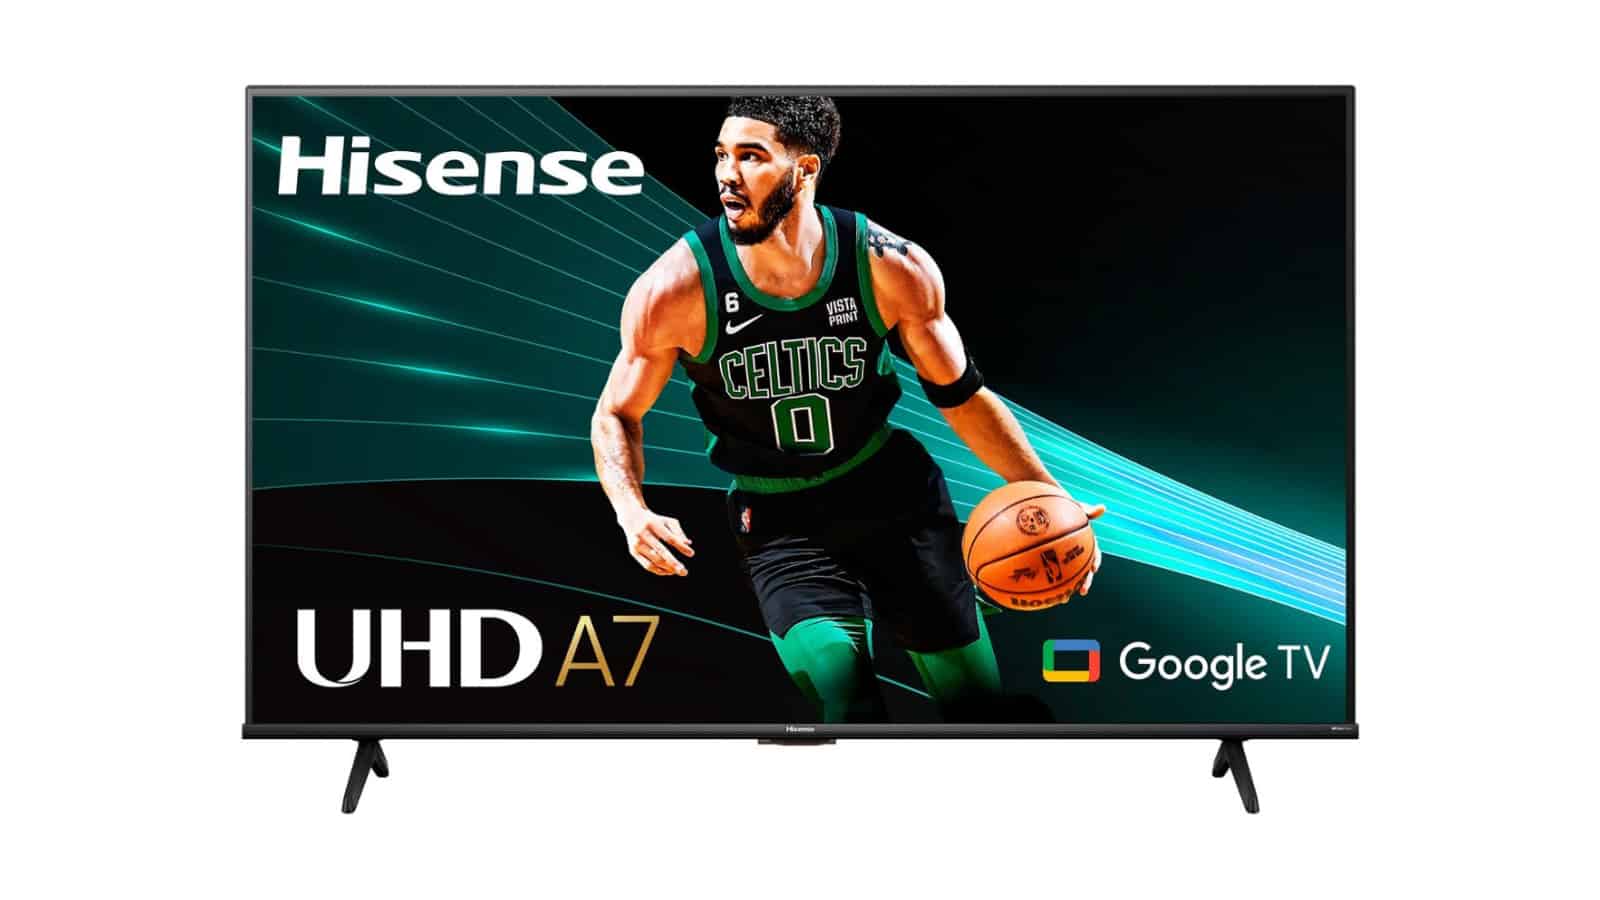 Ahorre $ 250 en este televisor Hisense A7 4K de 85 pulgadas antes del día del juego